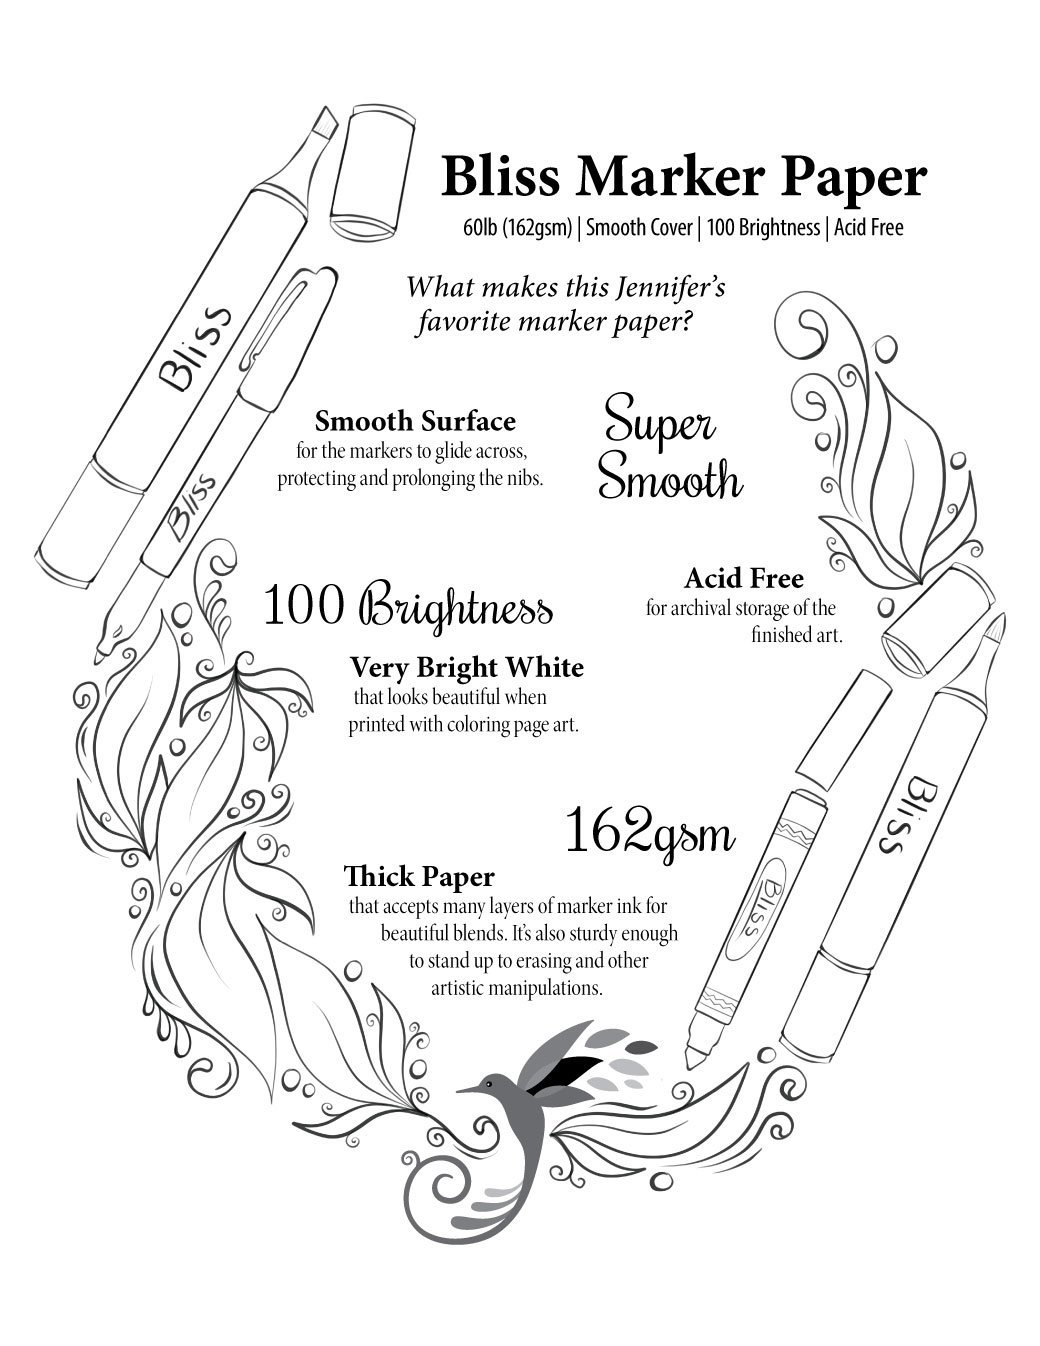 Bliss marker paper